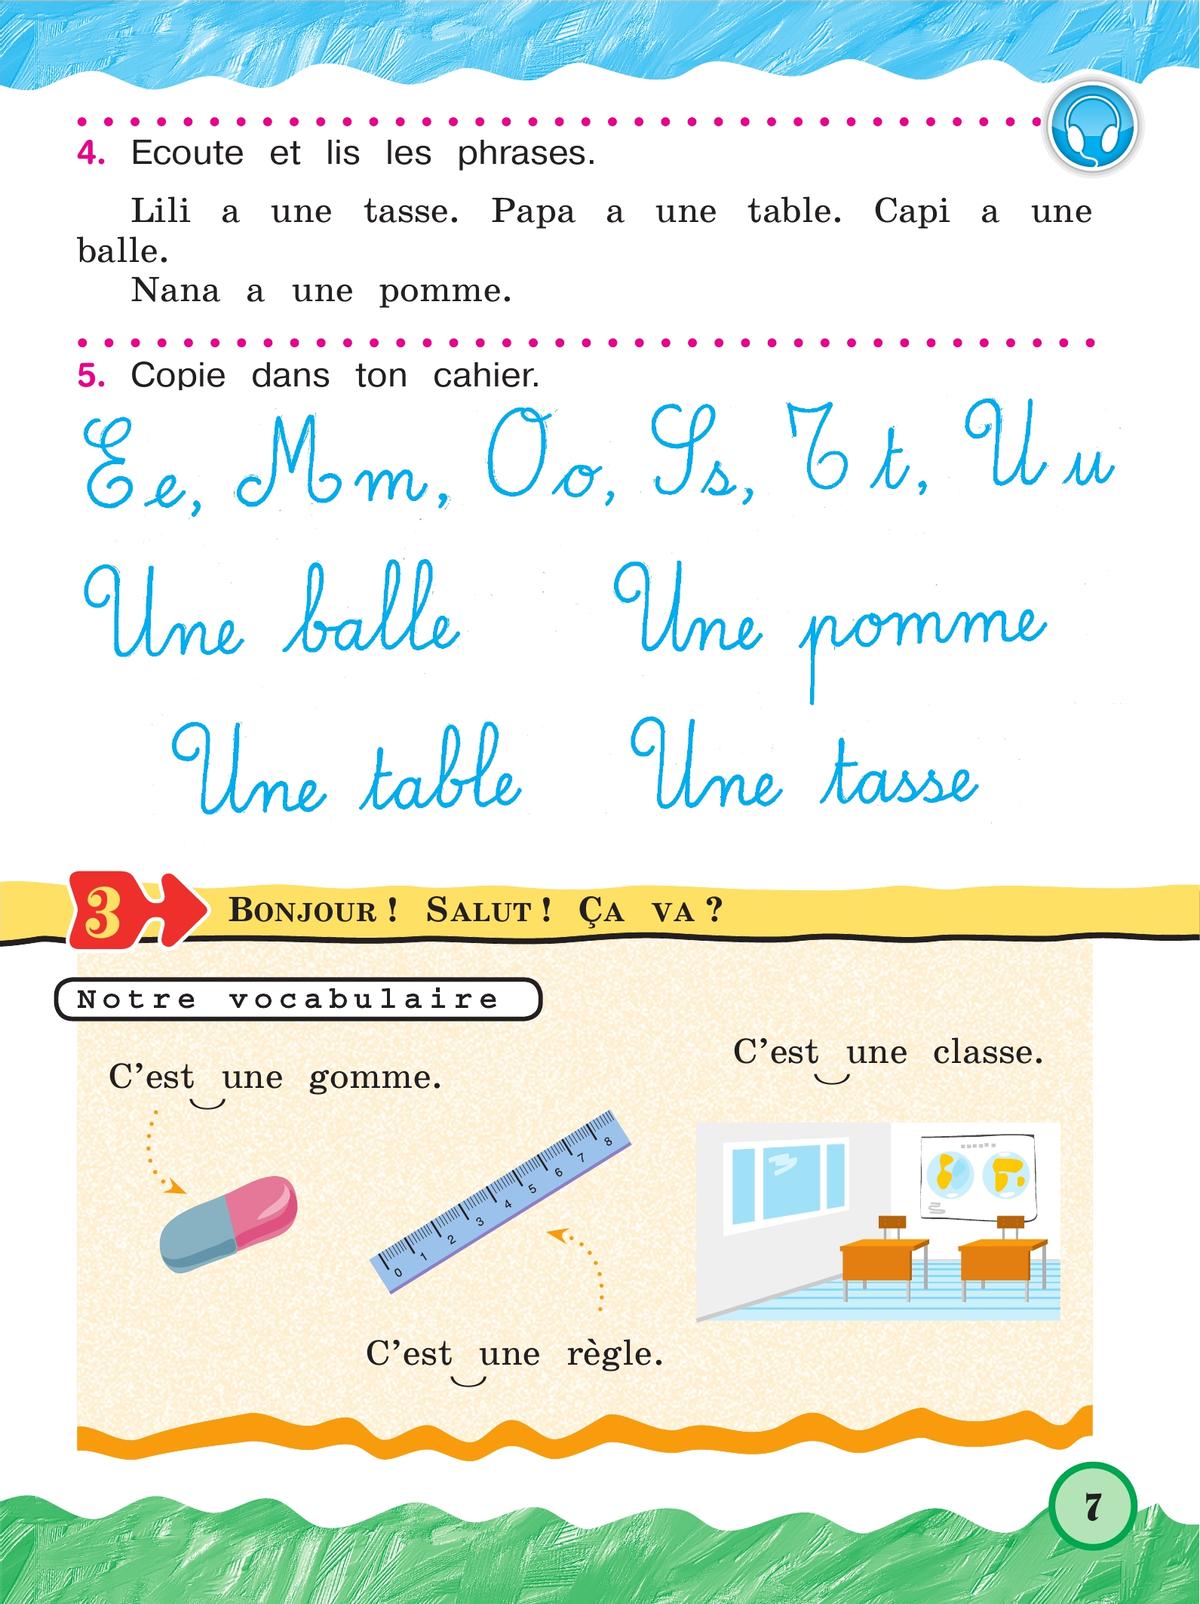 Французский язык. 2 класс. Учебник. В 2 ч. Часть 1. Углублённый уровень 11